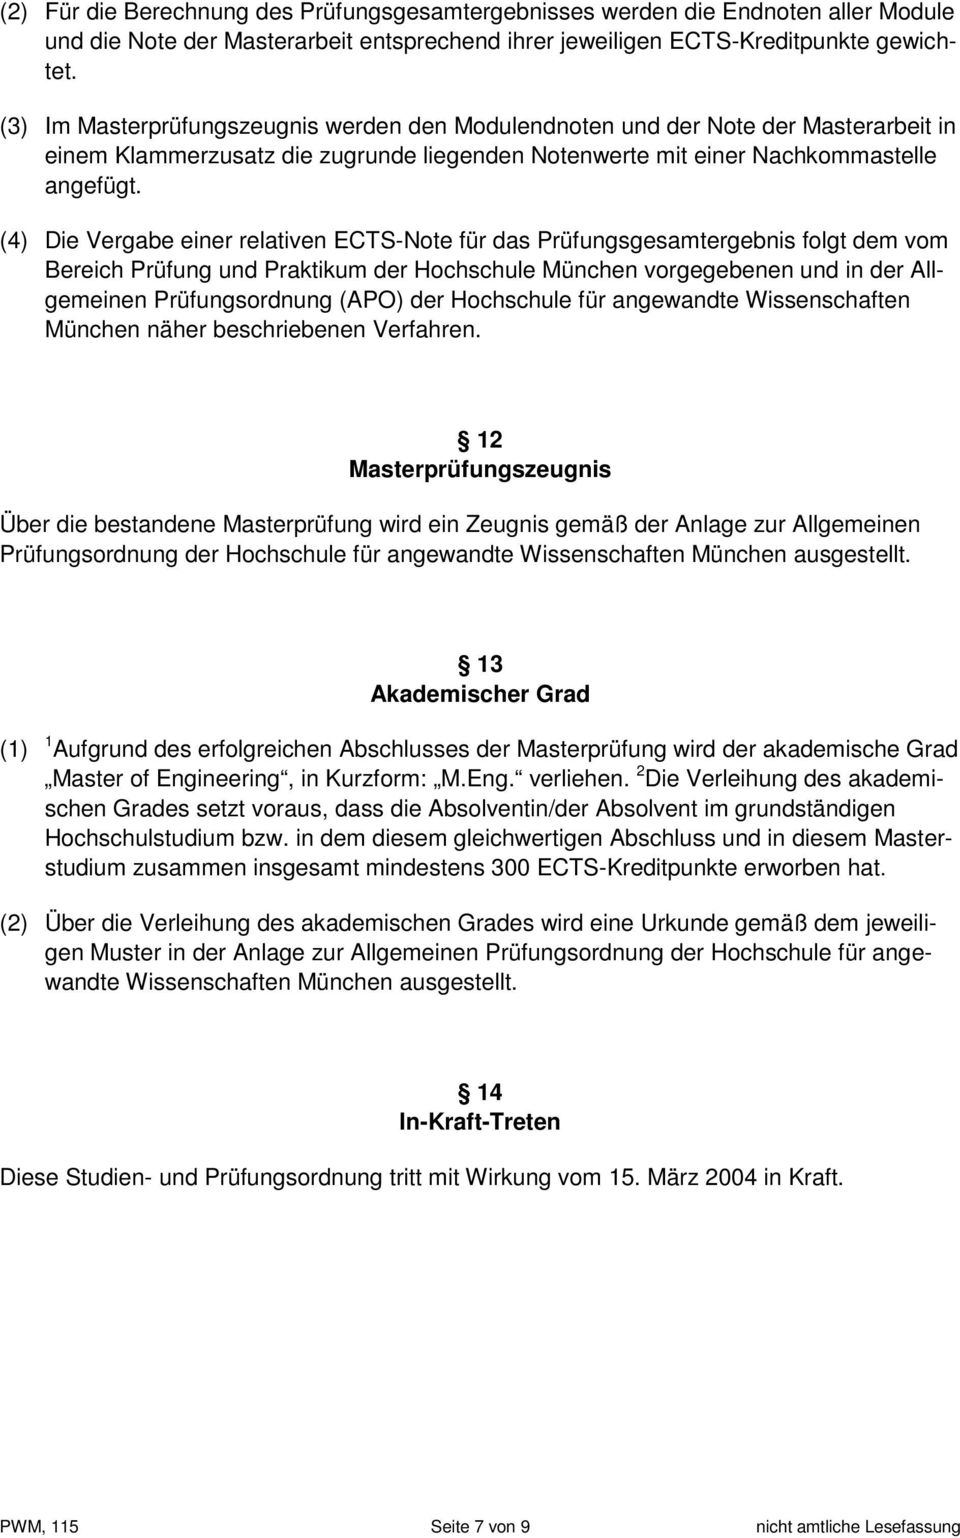 (4) Die Vergabe einer relativen ECTS-Note für das Prüfungsgesamtergebnis folgt dem vom Bereich Prüfung und Praktikum der Hochschule München vorgegebenen und in der Allgemeinen Prüfungsordnung (APO)